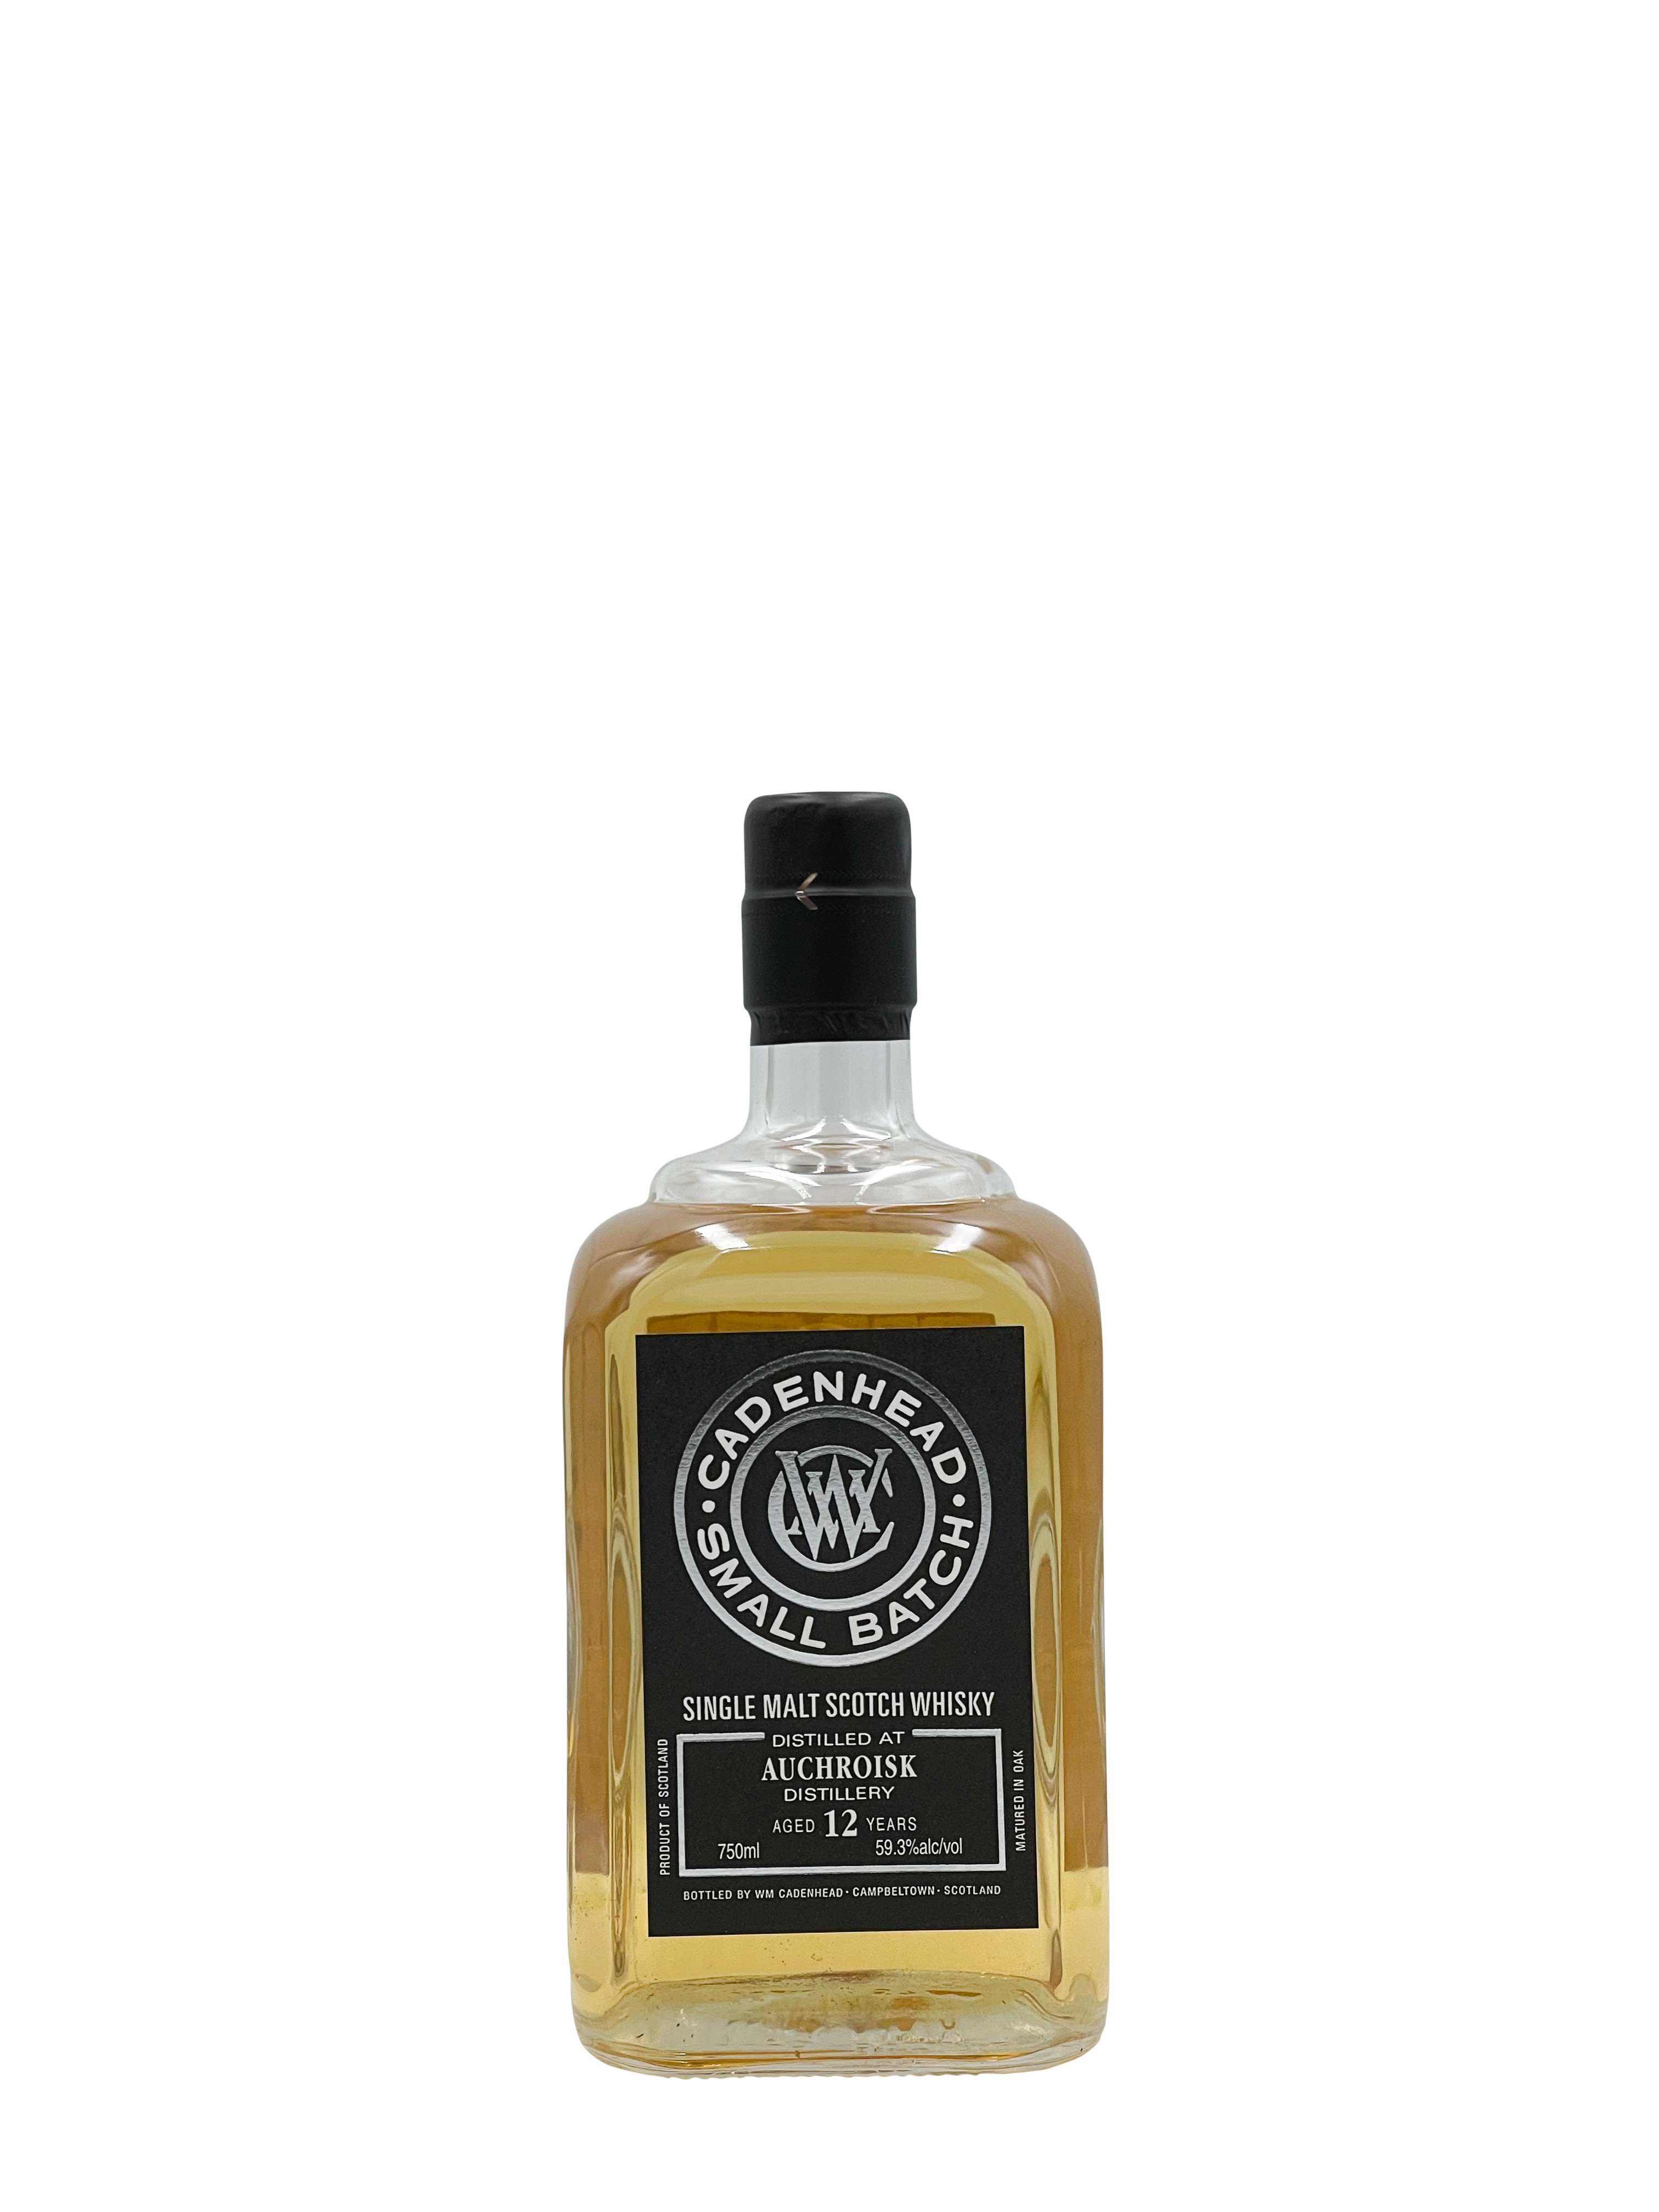 Auchroisk "Cadenhead" 12 Year Single Malt Whisky